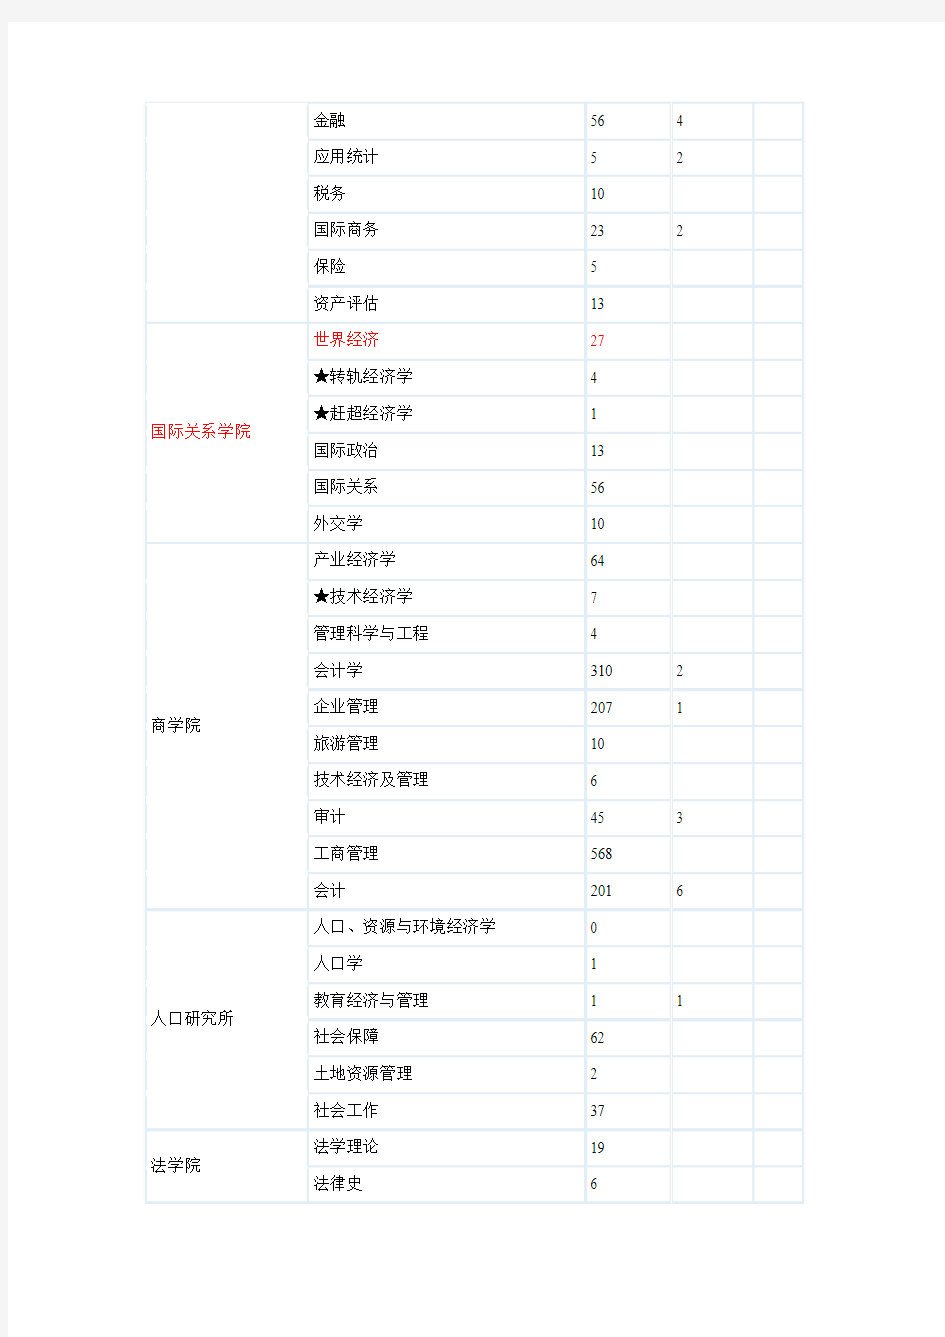 辽宁大学2012年报考硕士研究生分专业统计表